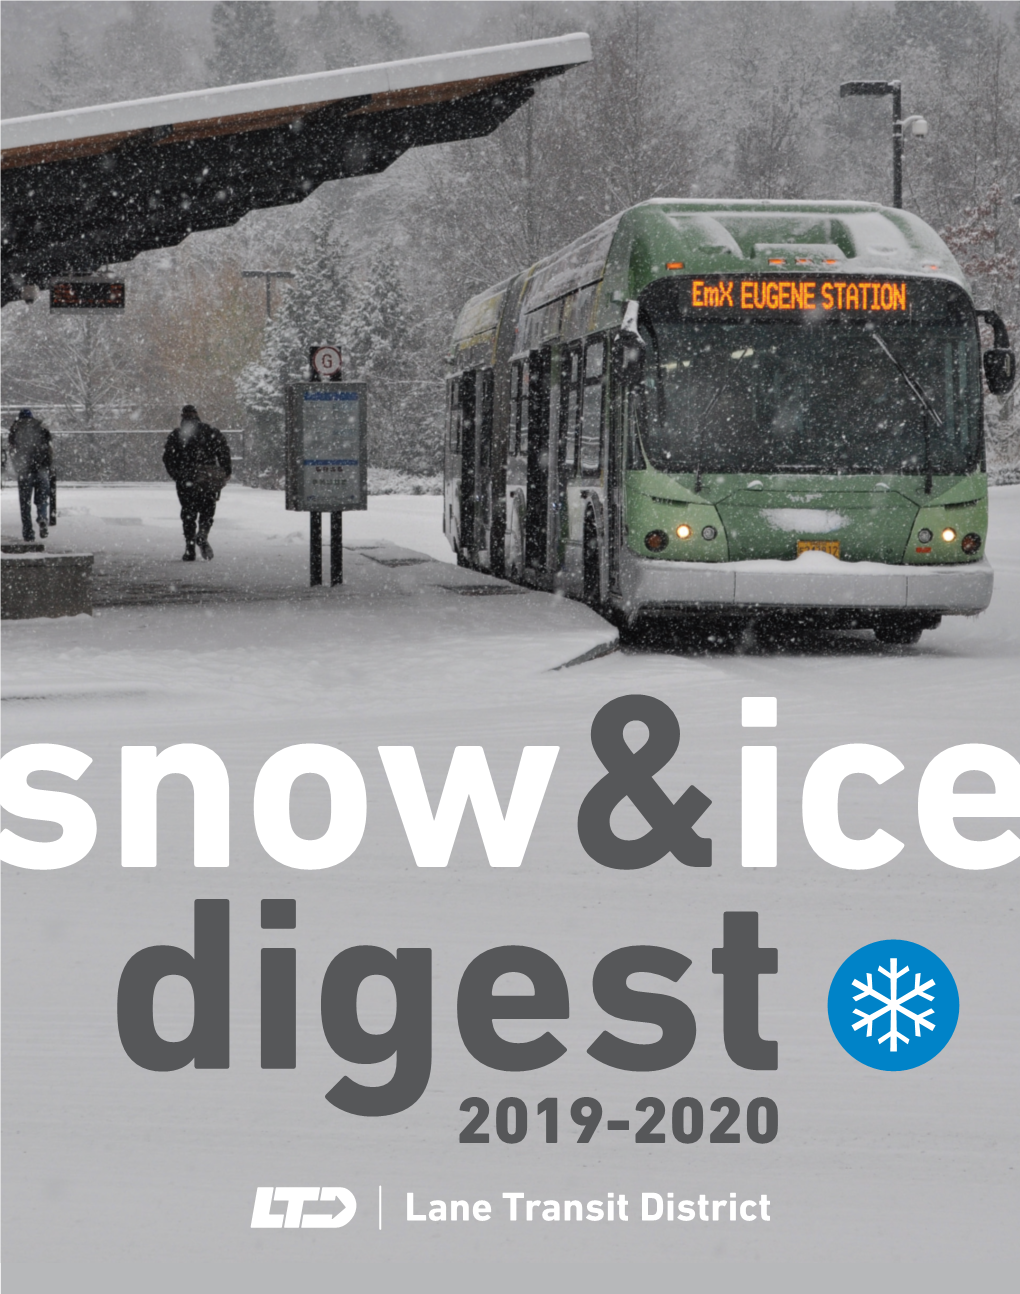 Snow & Ice Digest 2019